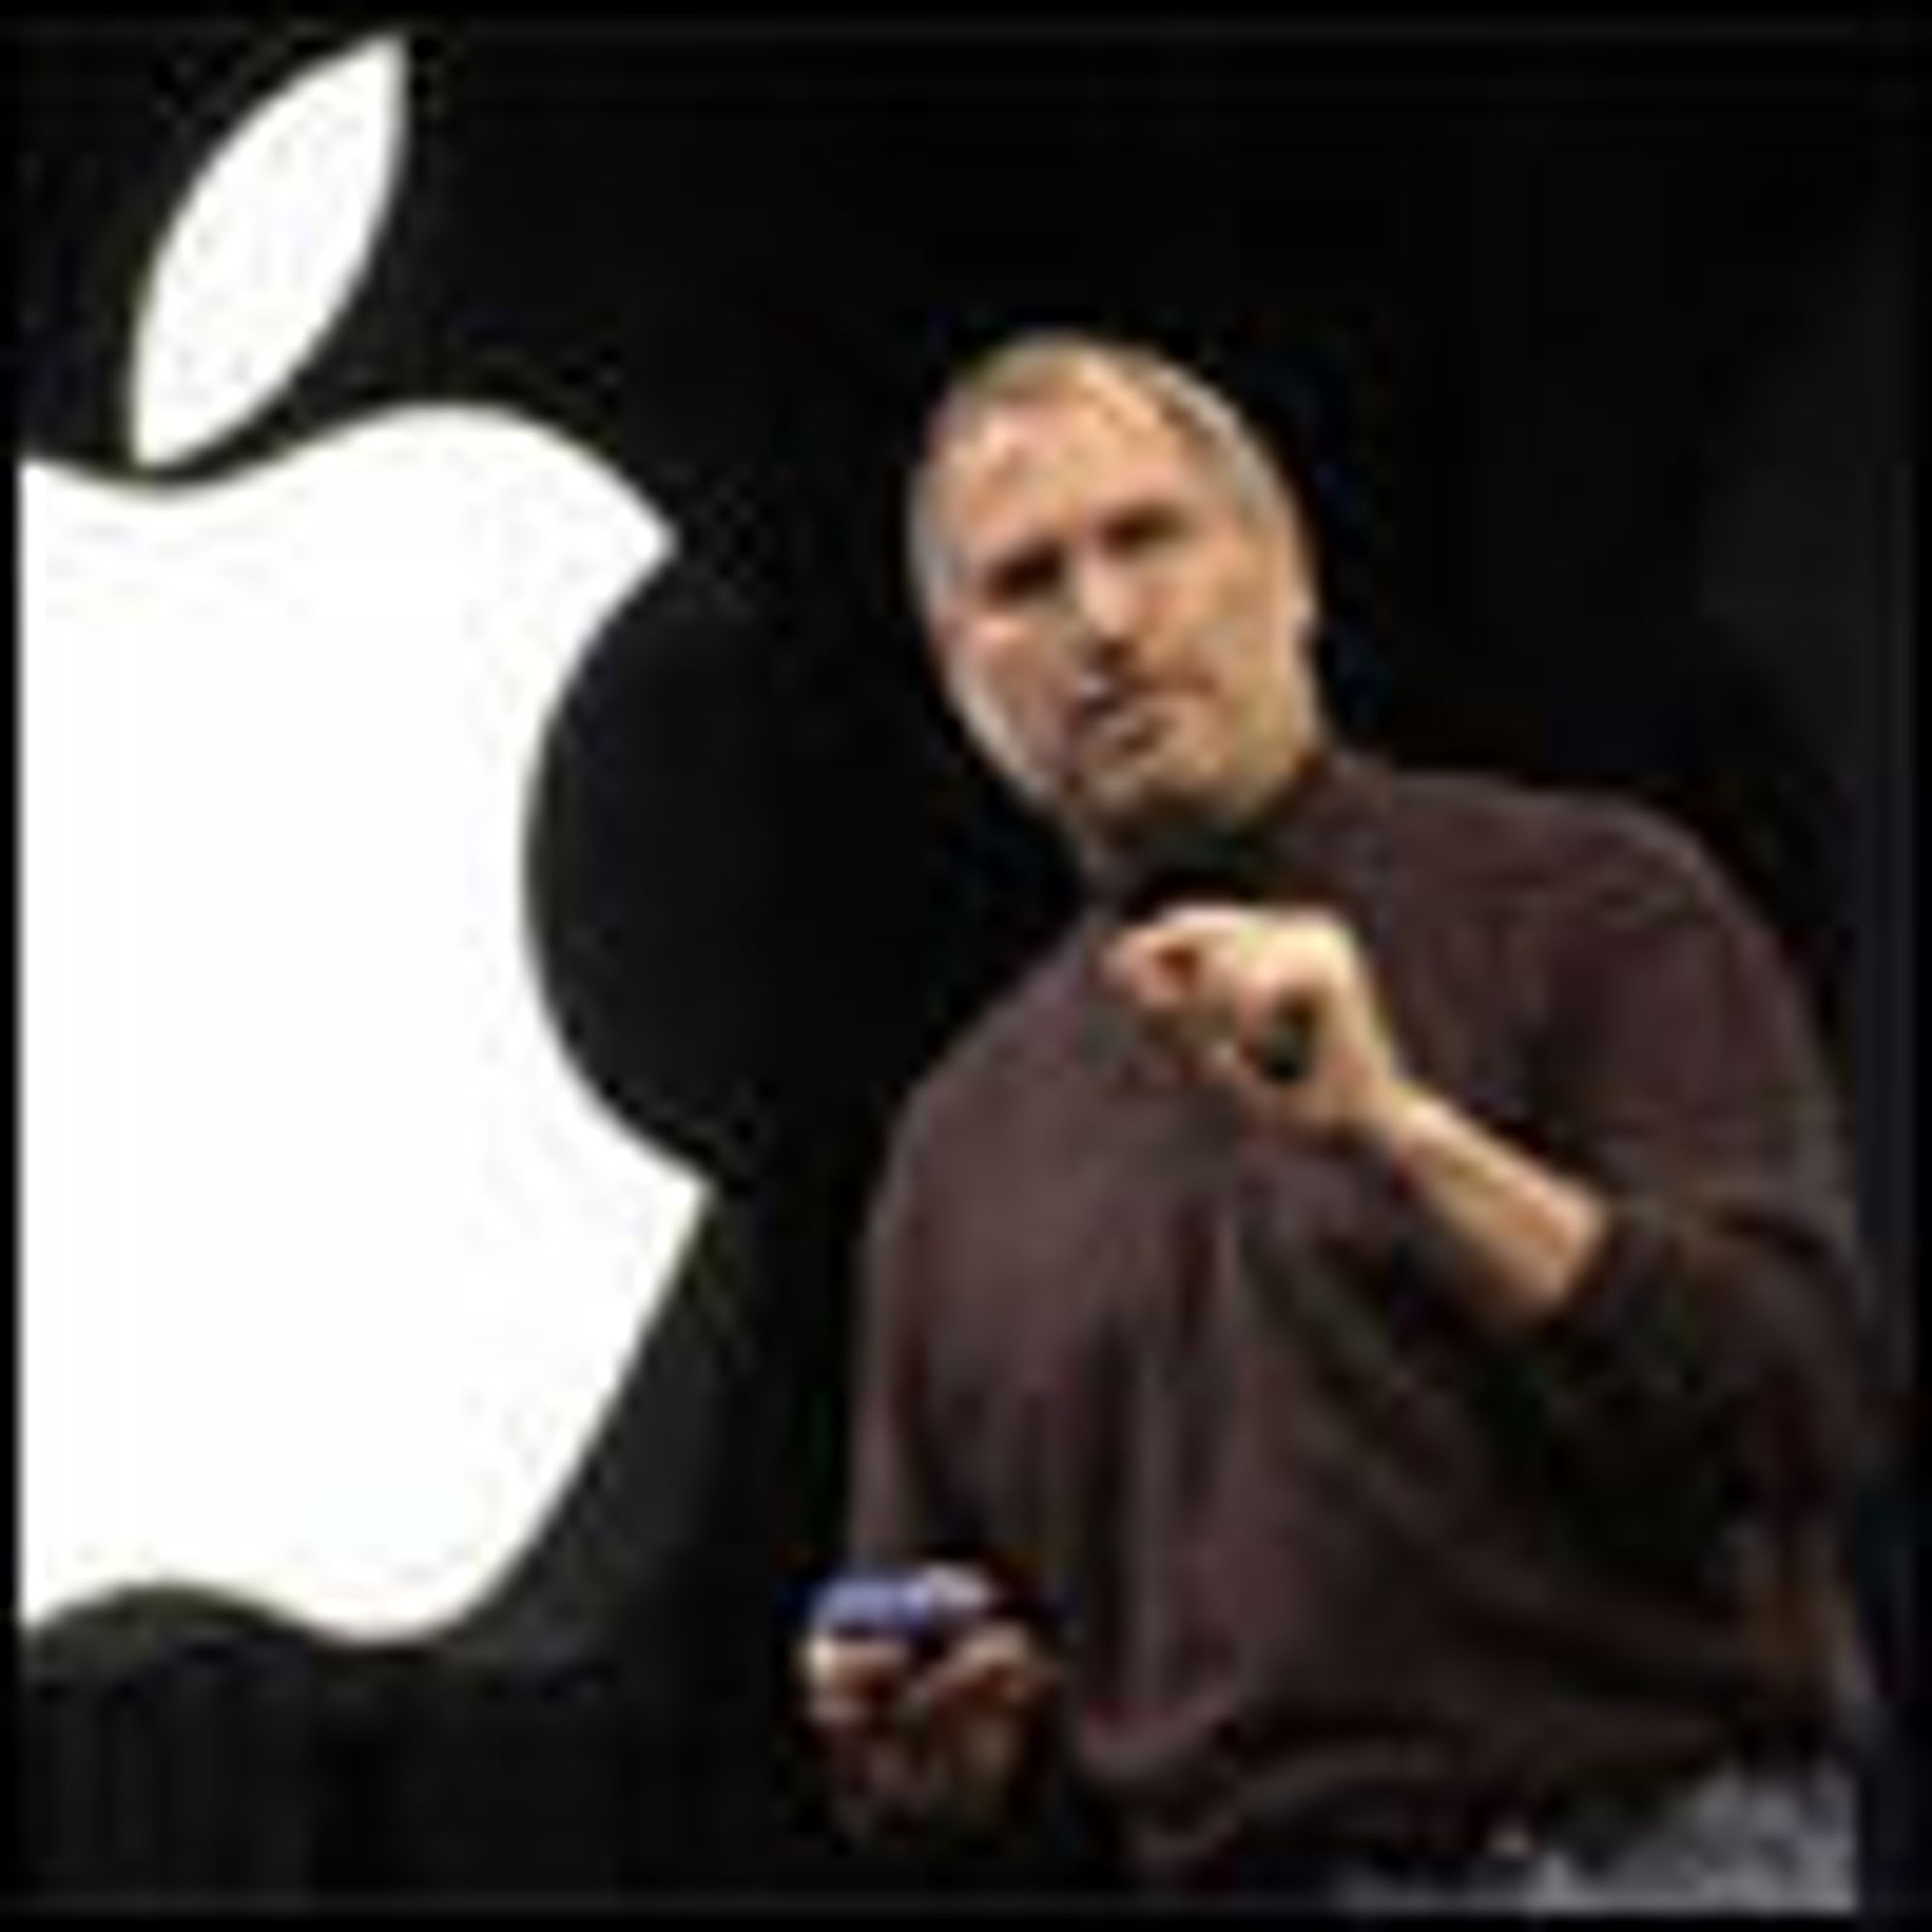 Steve Jobs unngår rettsak om opsjoner